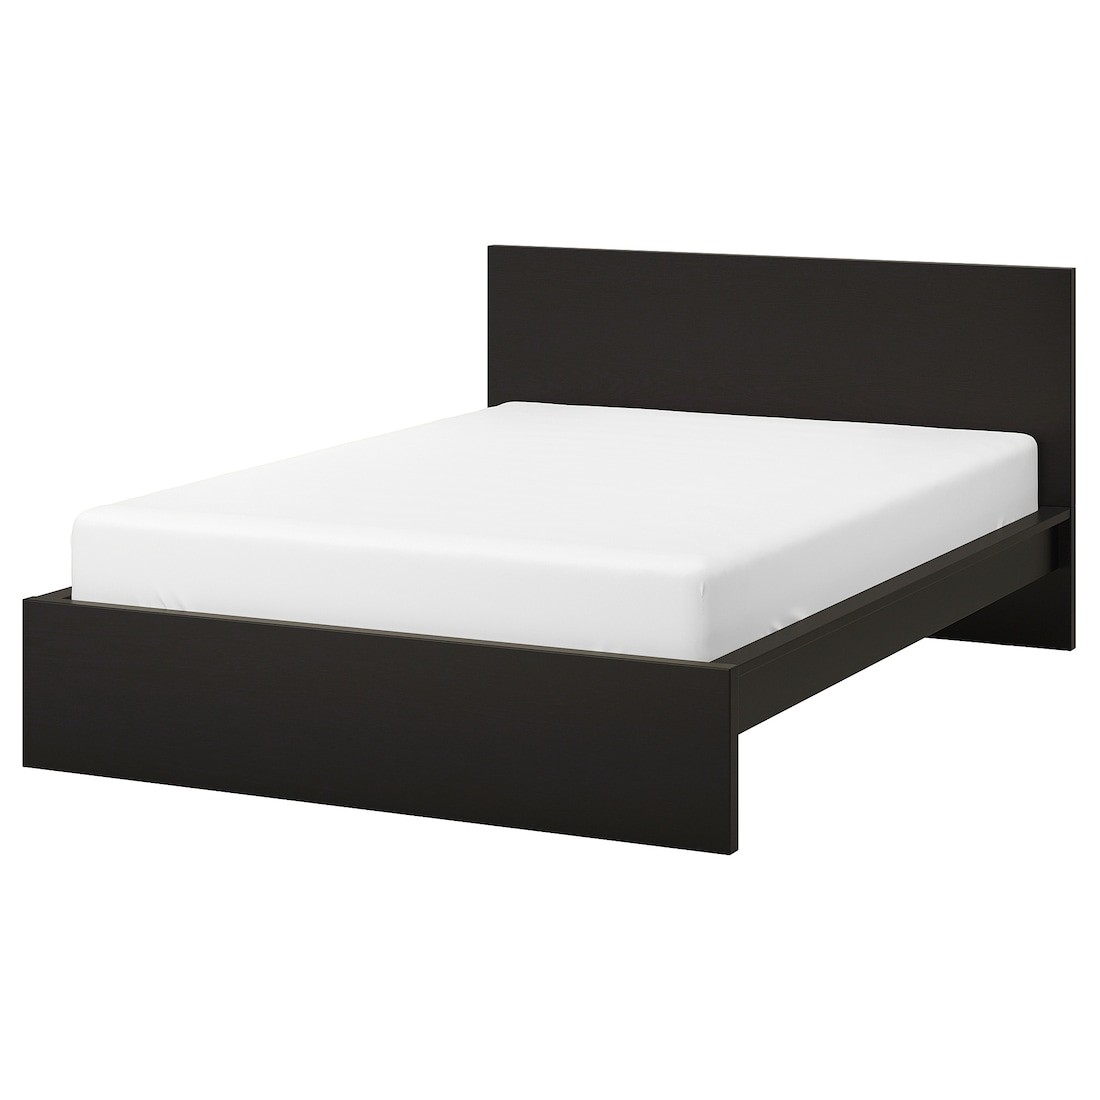 MALM МАЛЬМ Ліжко двоспальне, високе, чорно-коричневий / Leirsund, 140x200 см